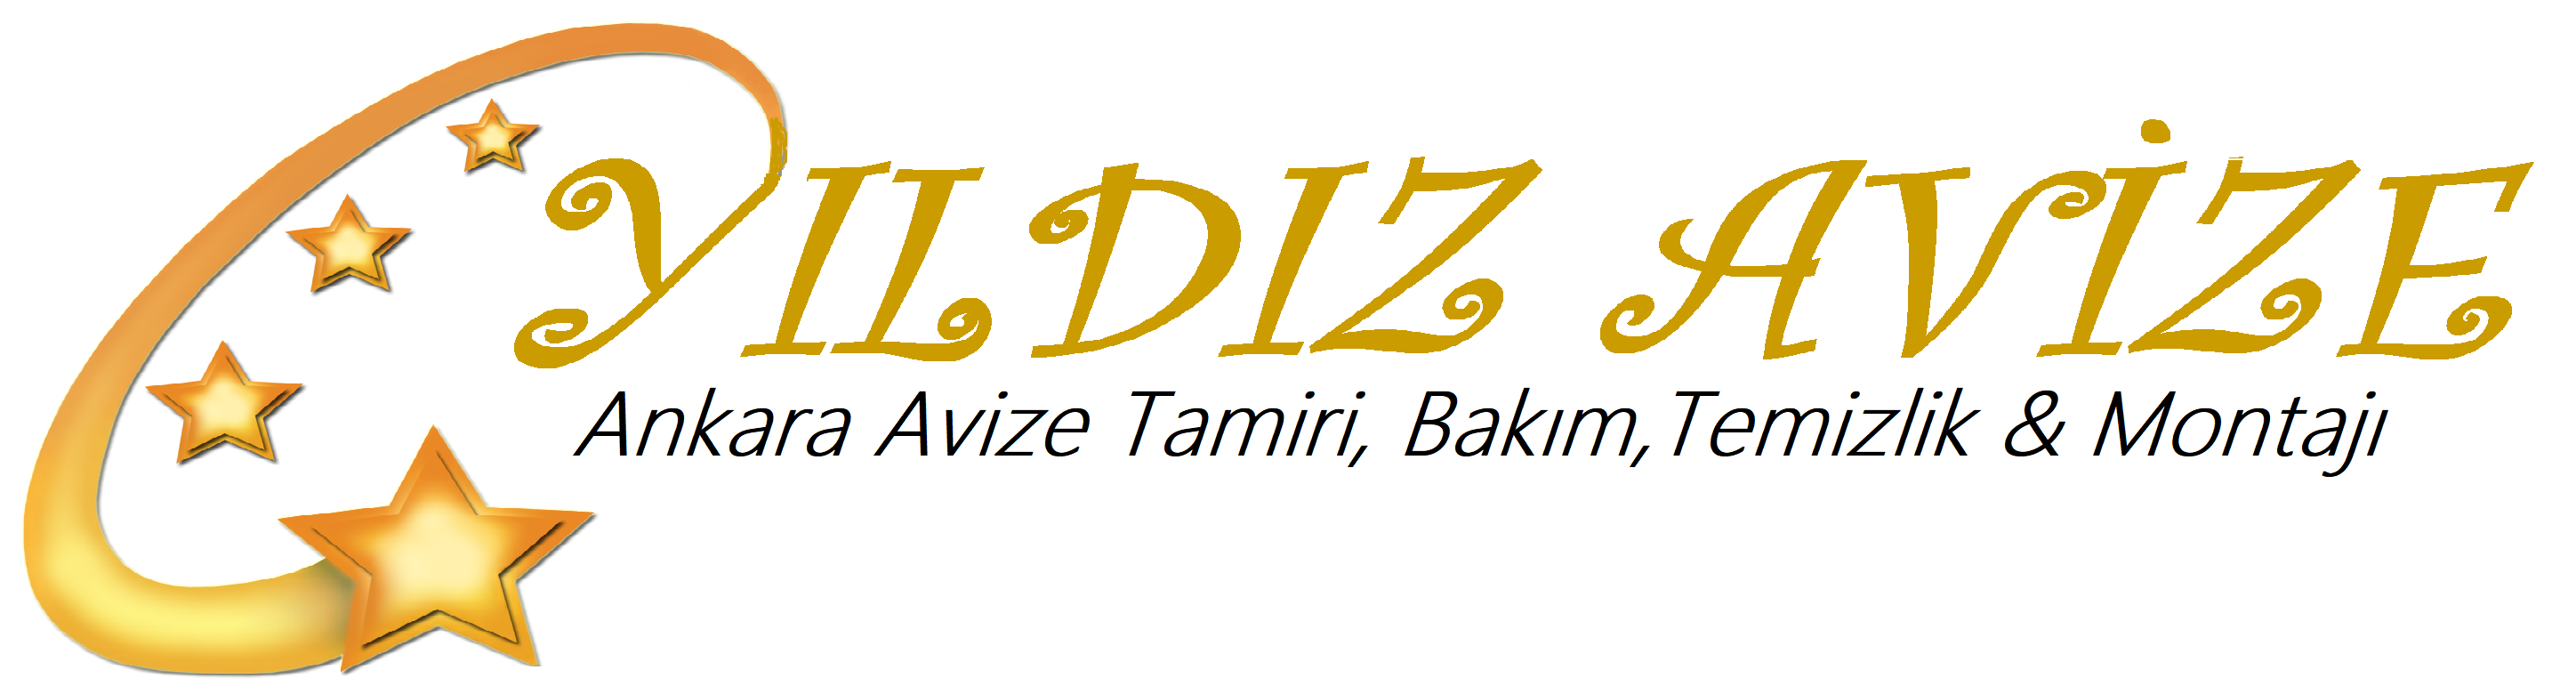 Yıldız Avize - Logo - Ankara Avize Tamiri